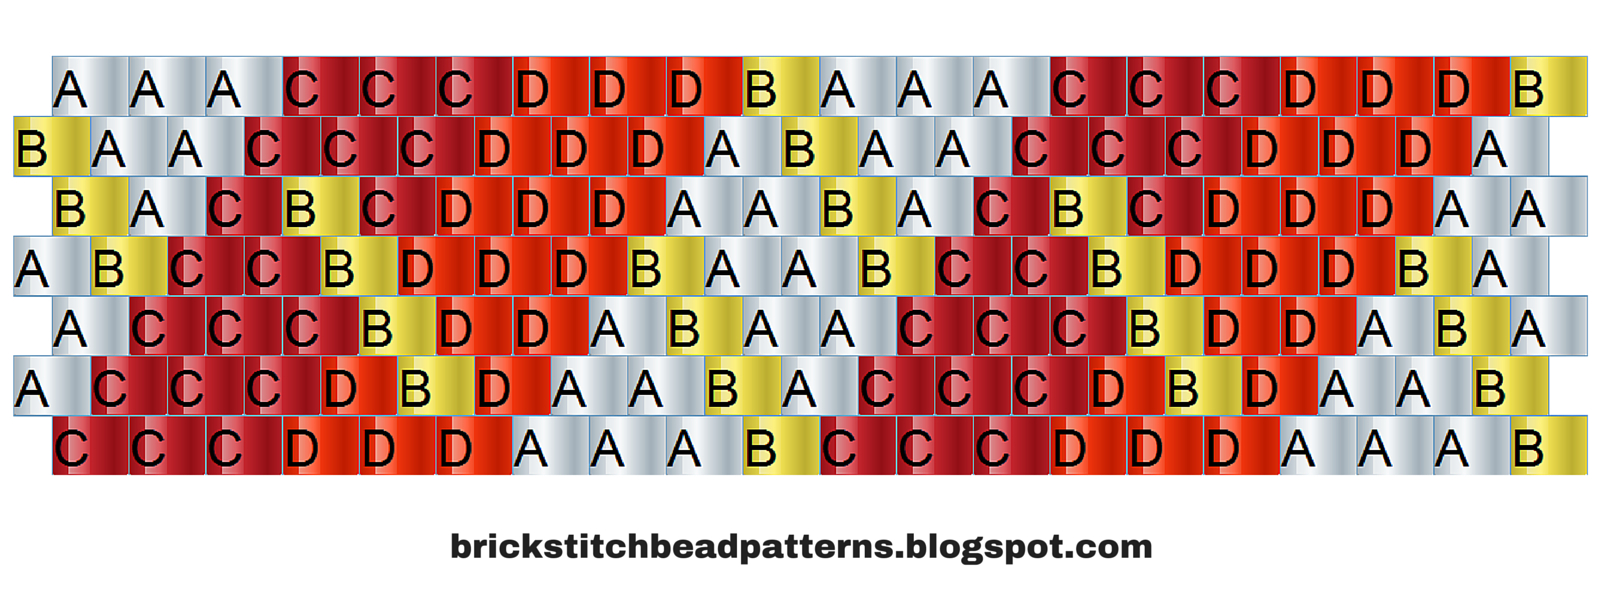 Brick Stitch Bead Patterns Journal: #10 Free Brick Stitch Pony Bead - Pony Bead Patterns Free Printable